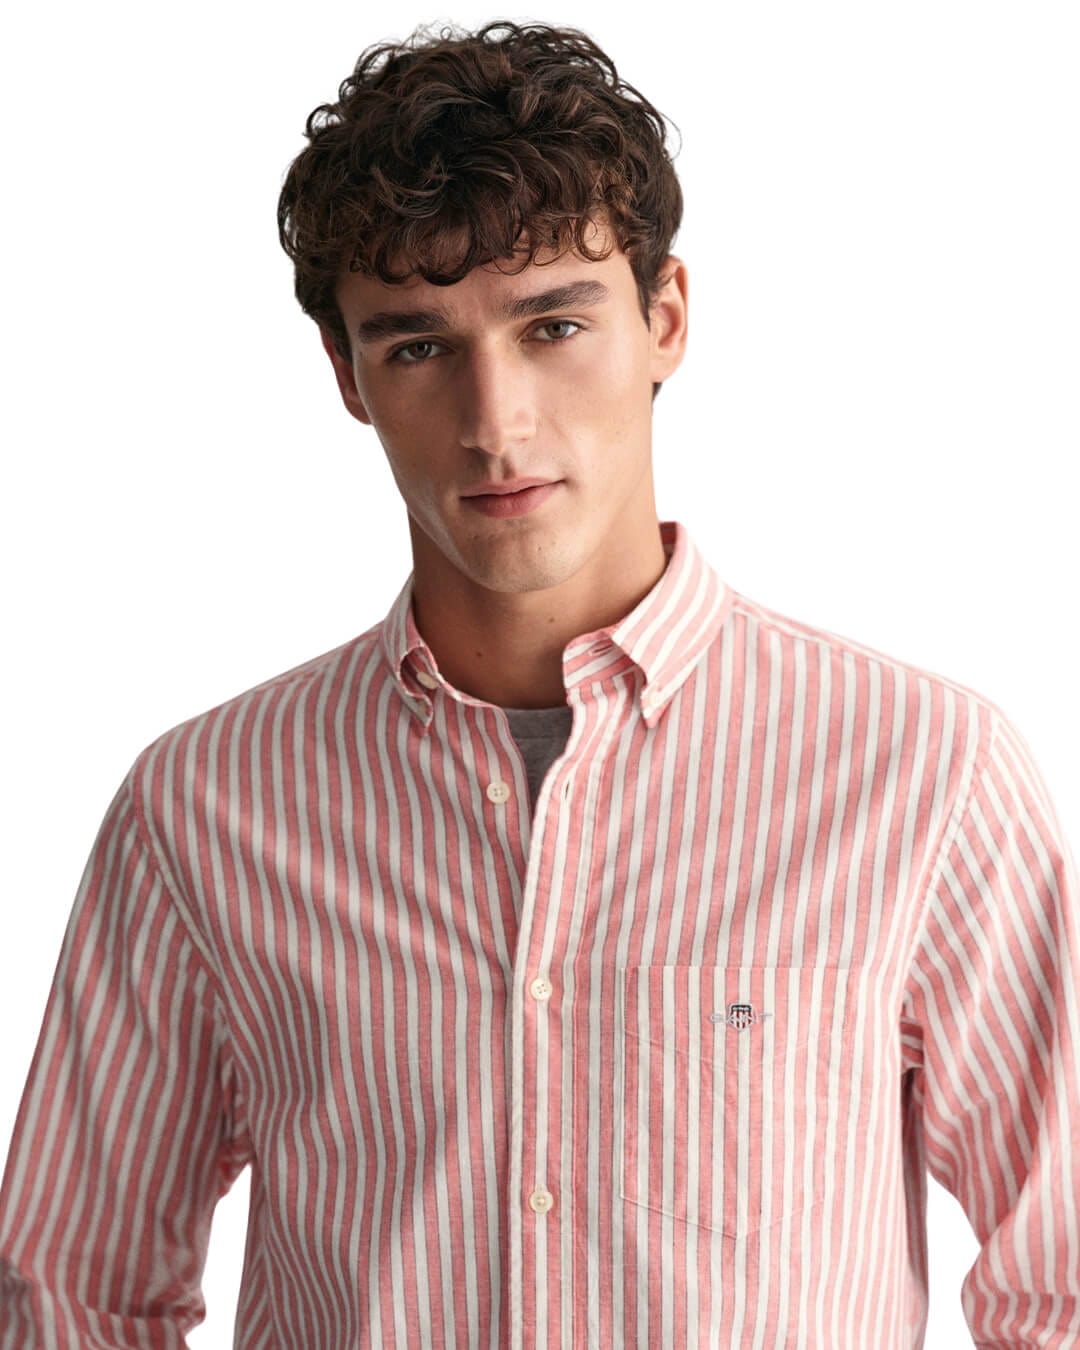 Gant Shirts REG COTTON LINEN STRIPE SHIRT G0628 SUNSET PINK